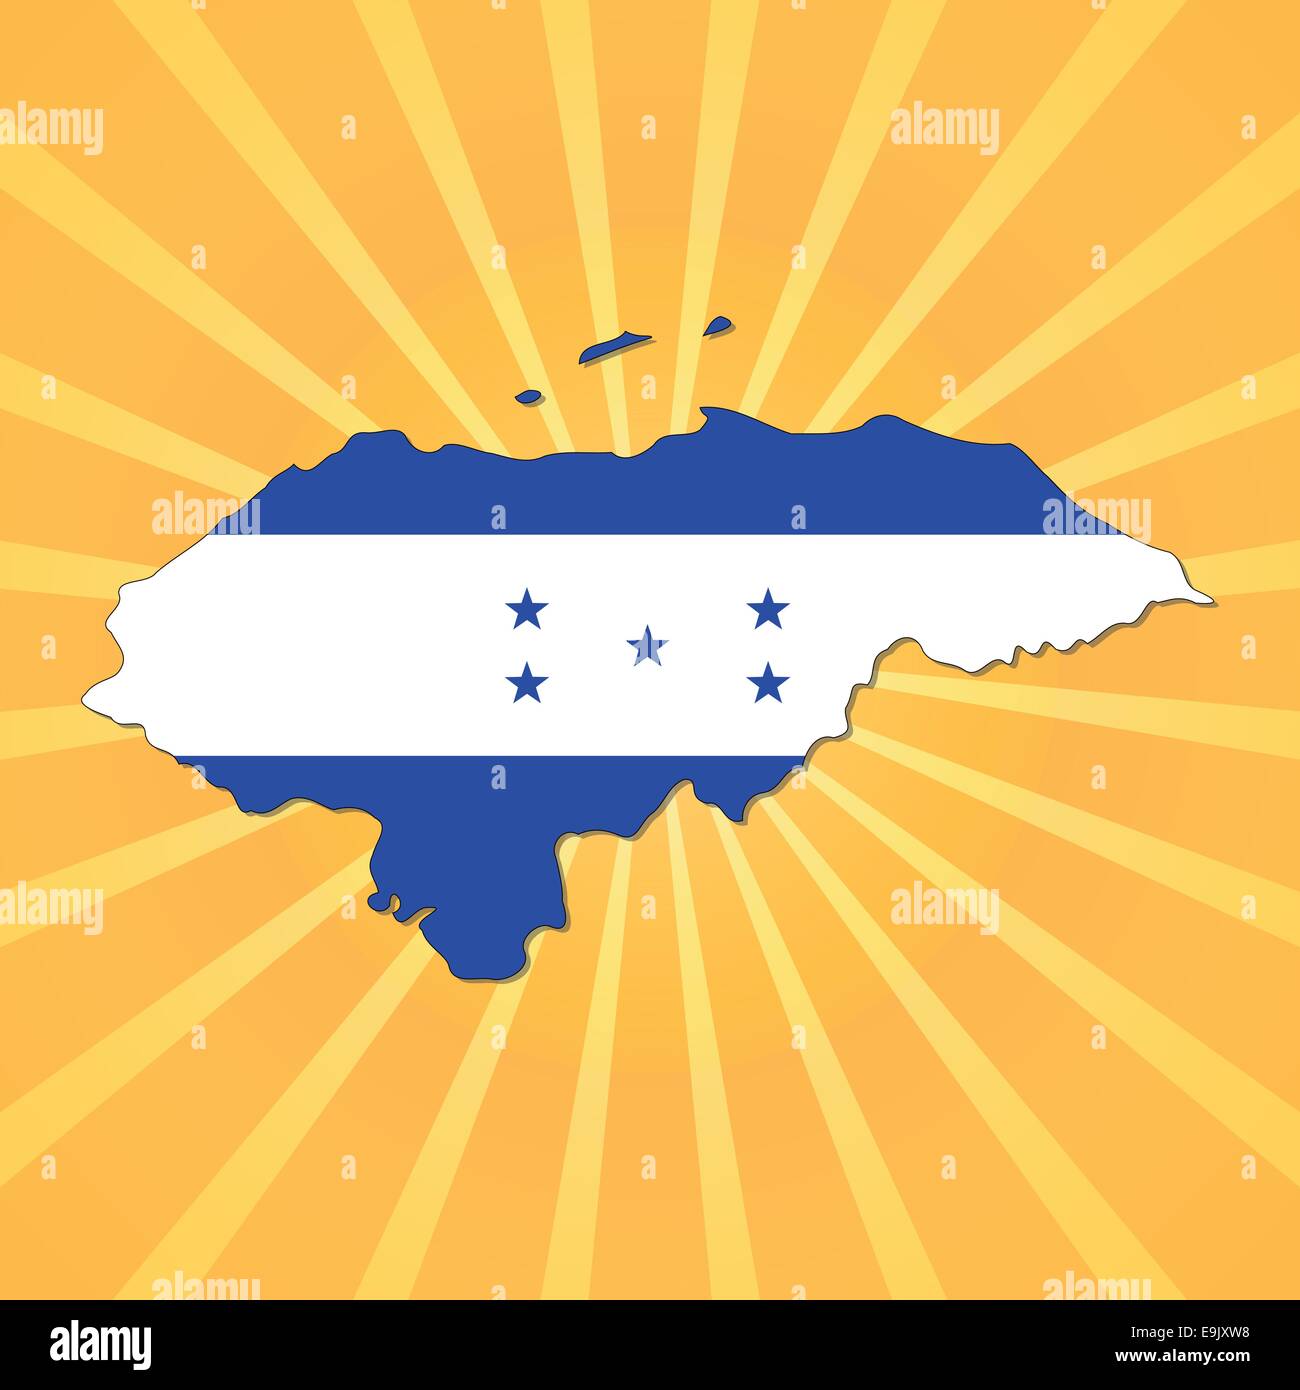 Honduras map flag on sunburst illustration Stock Vector